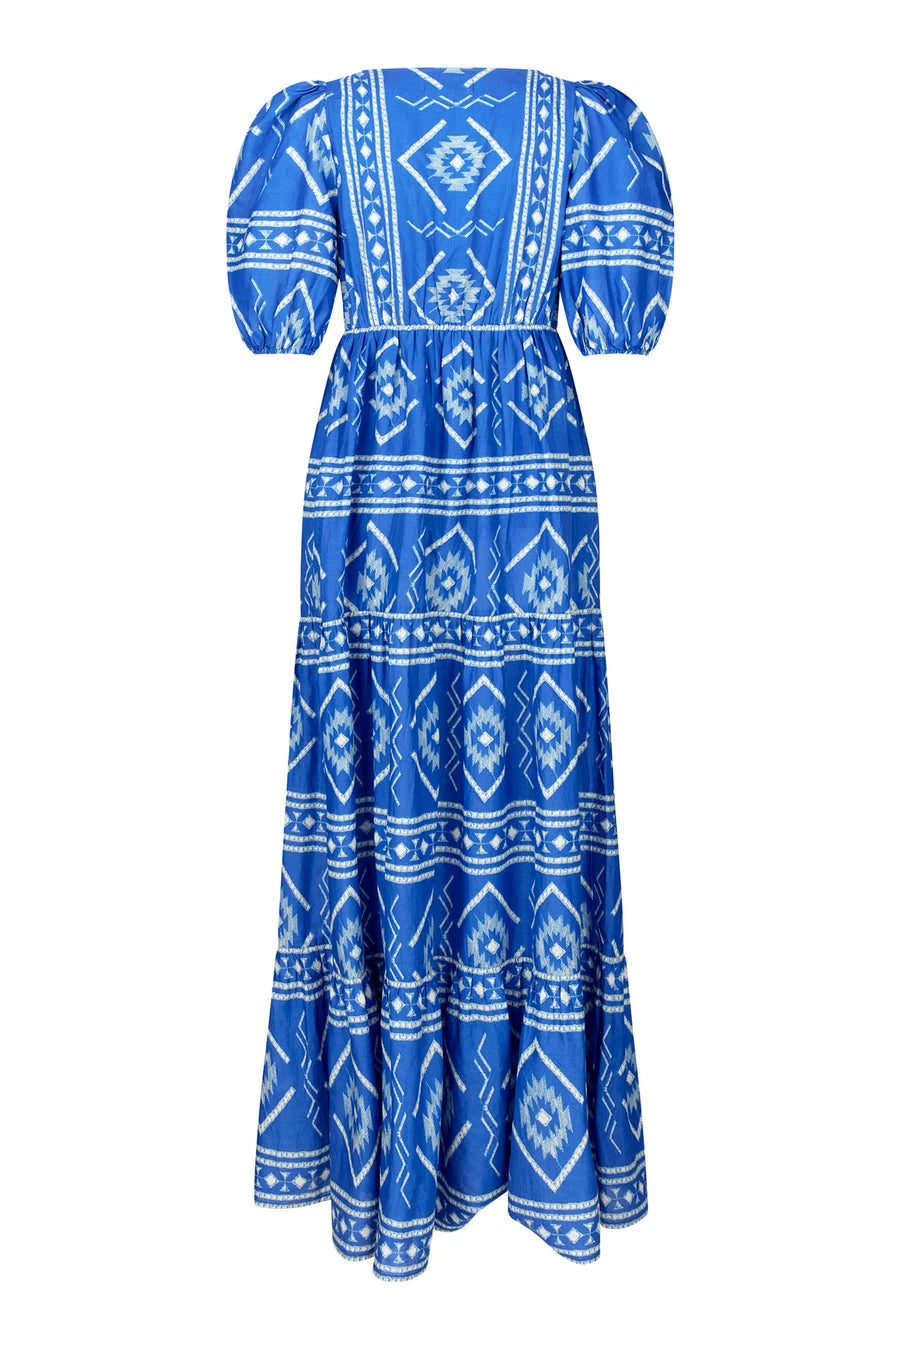 Lollys Laundry Gambo Maxi Dress Blue Batik Print